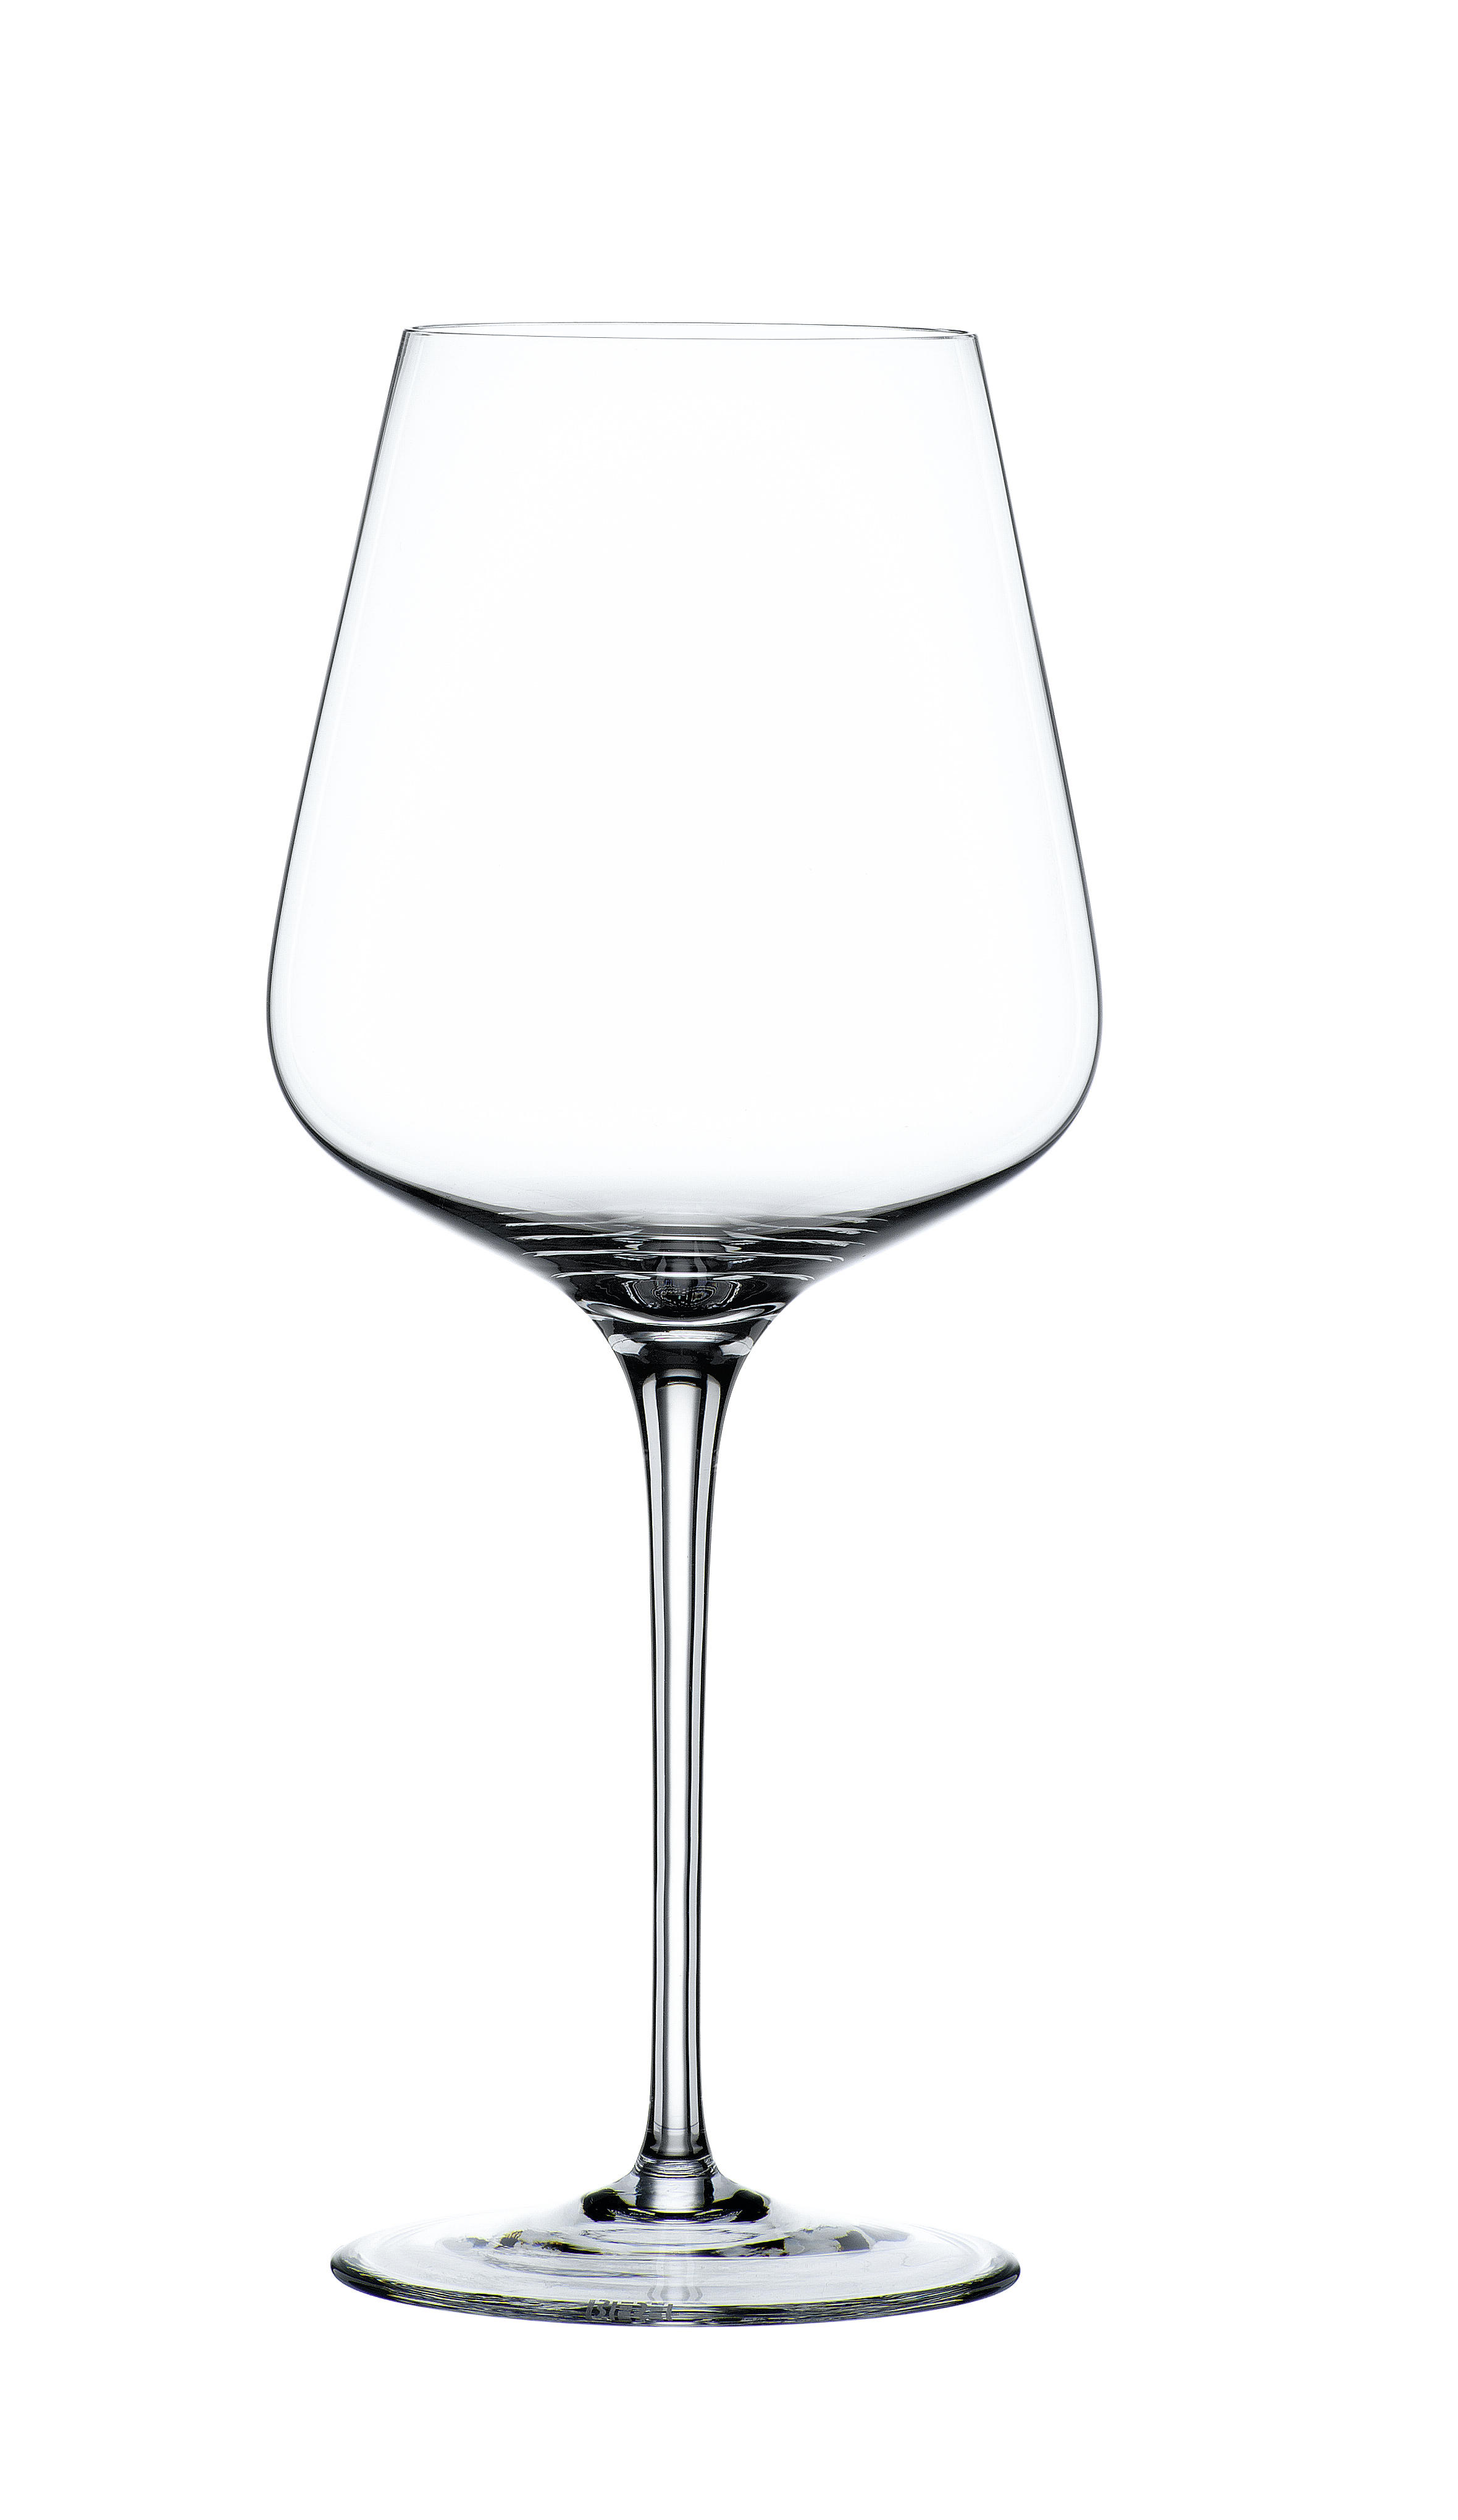 GLÄSERSET Vinova  4-teilig  - Transparent, Design, Glas (25,2/25,2/24,9cm) - Nachtmann